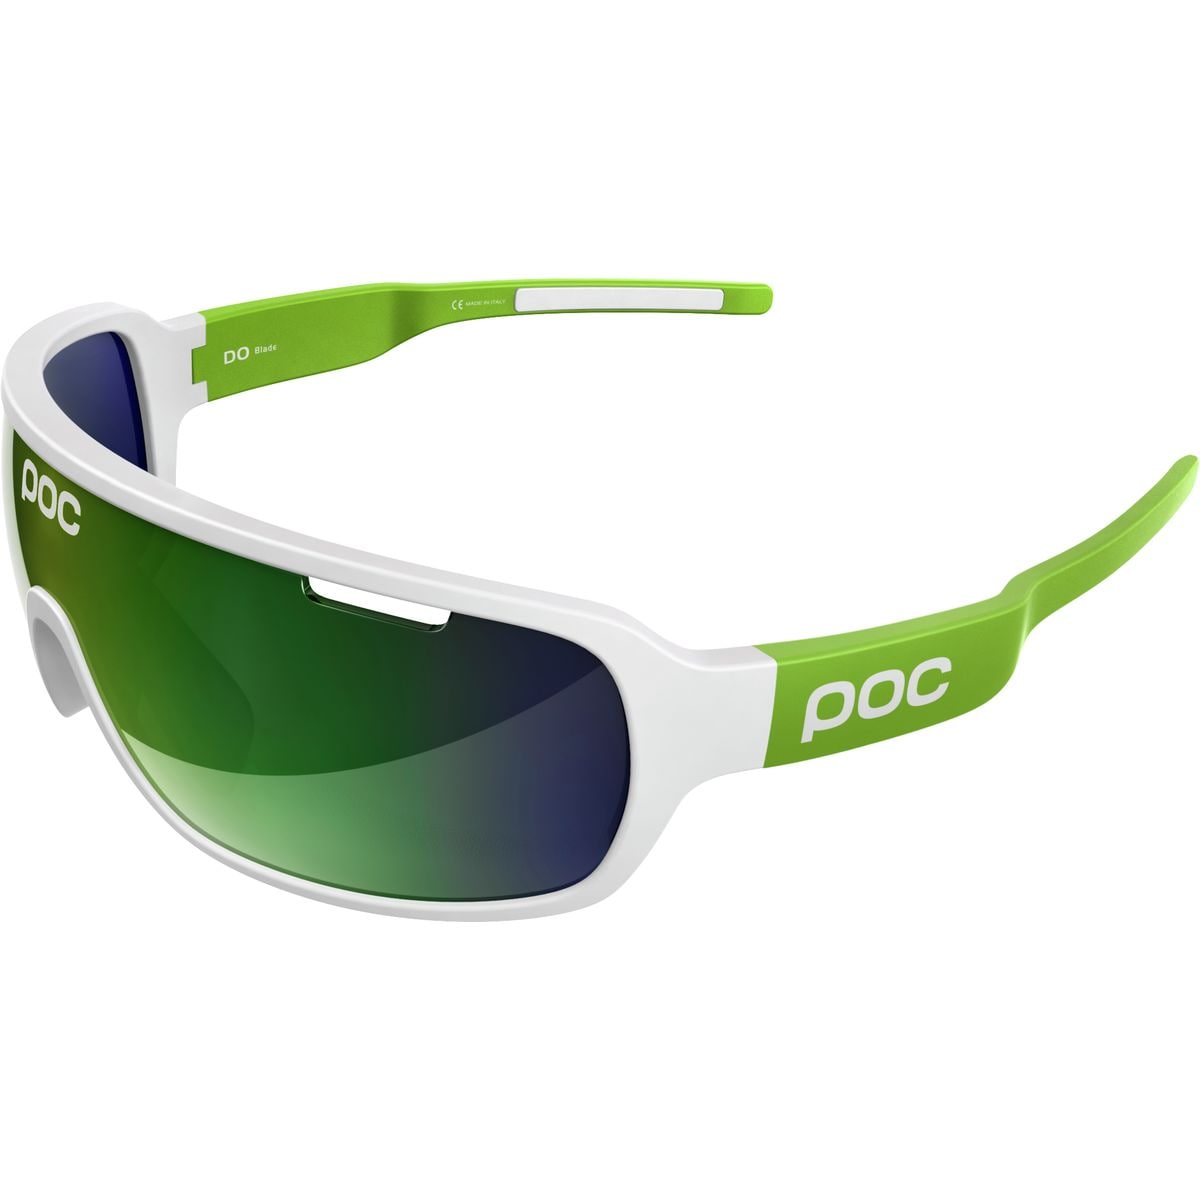 POC DO Blade Team Edition Sunglasses Men's